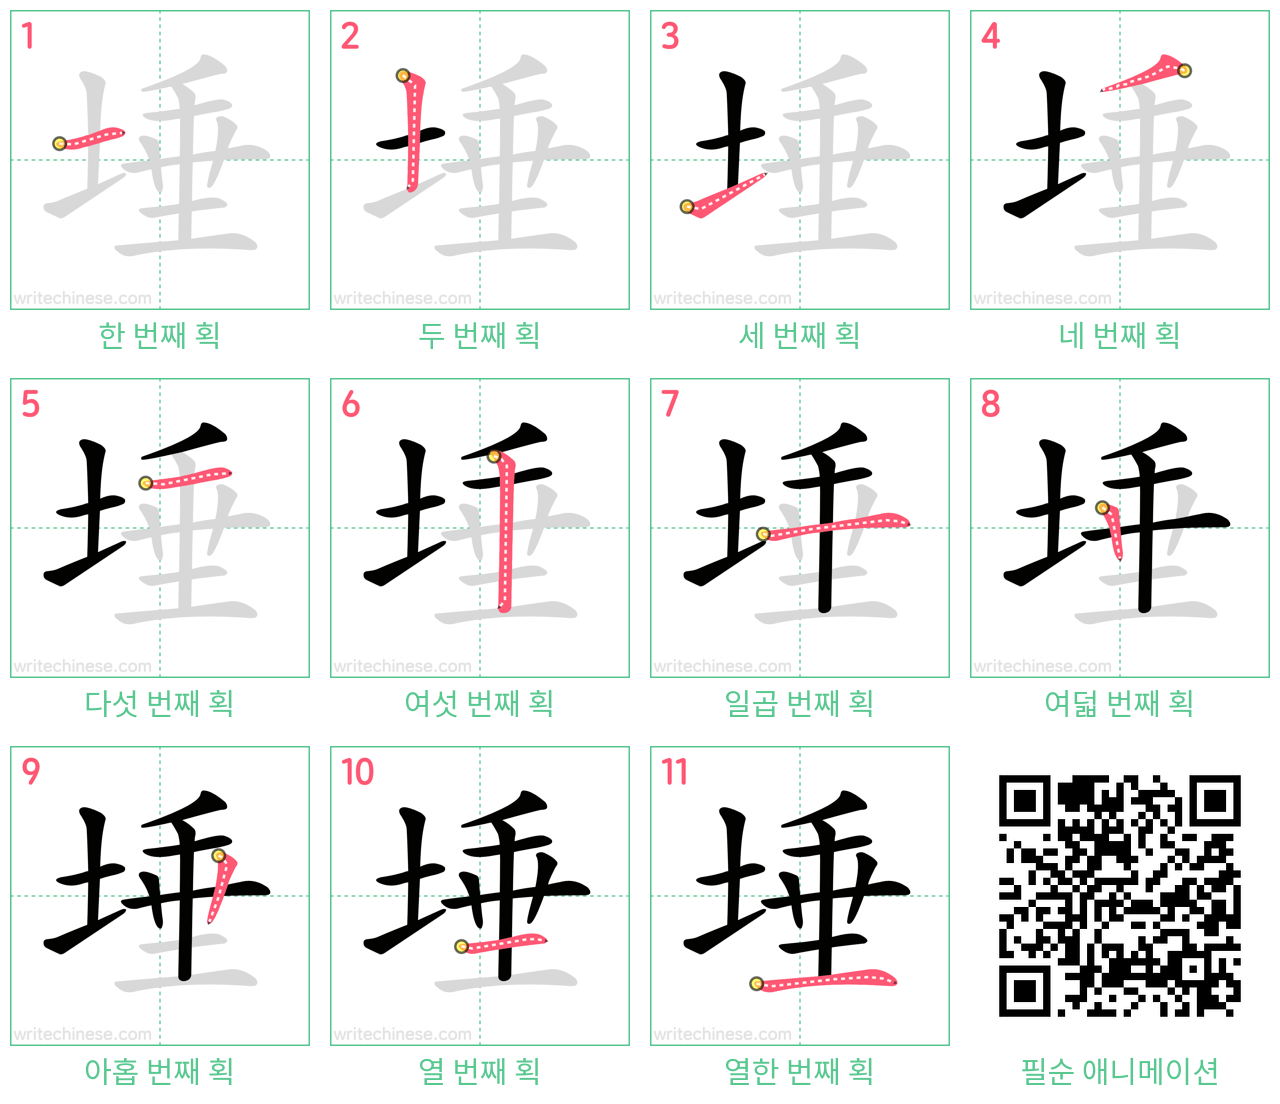 埵 step-by-step stroke order diagrams